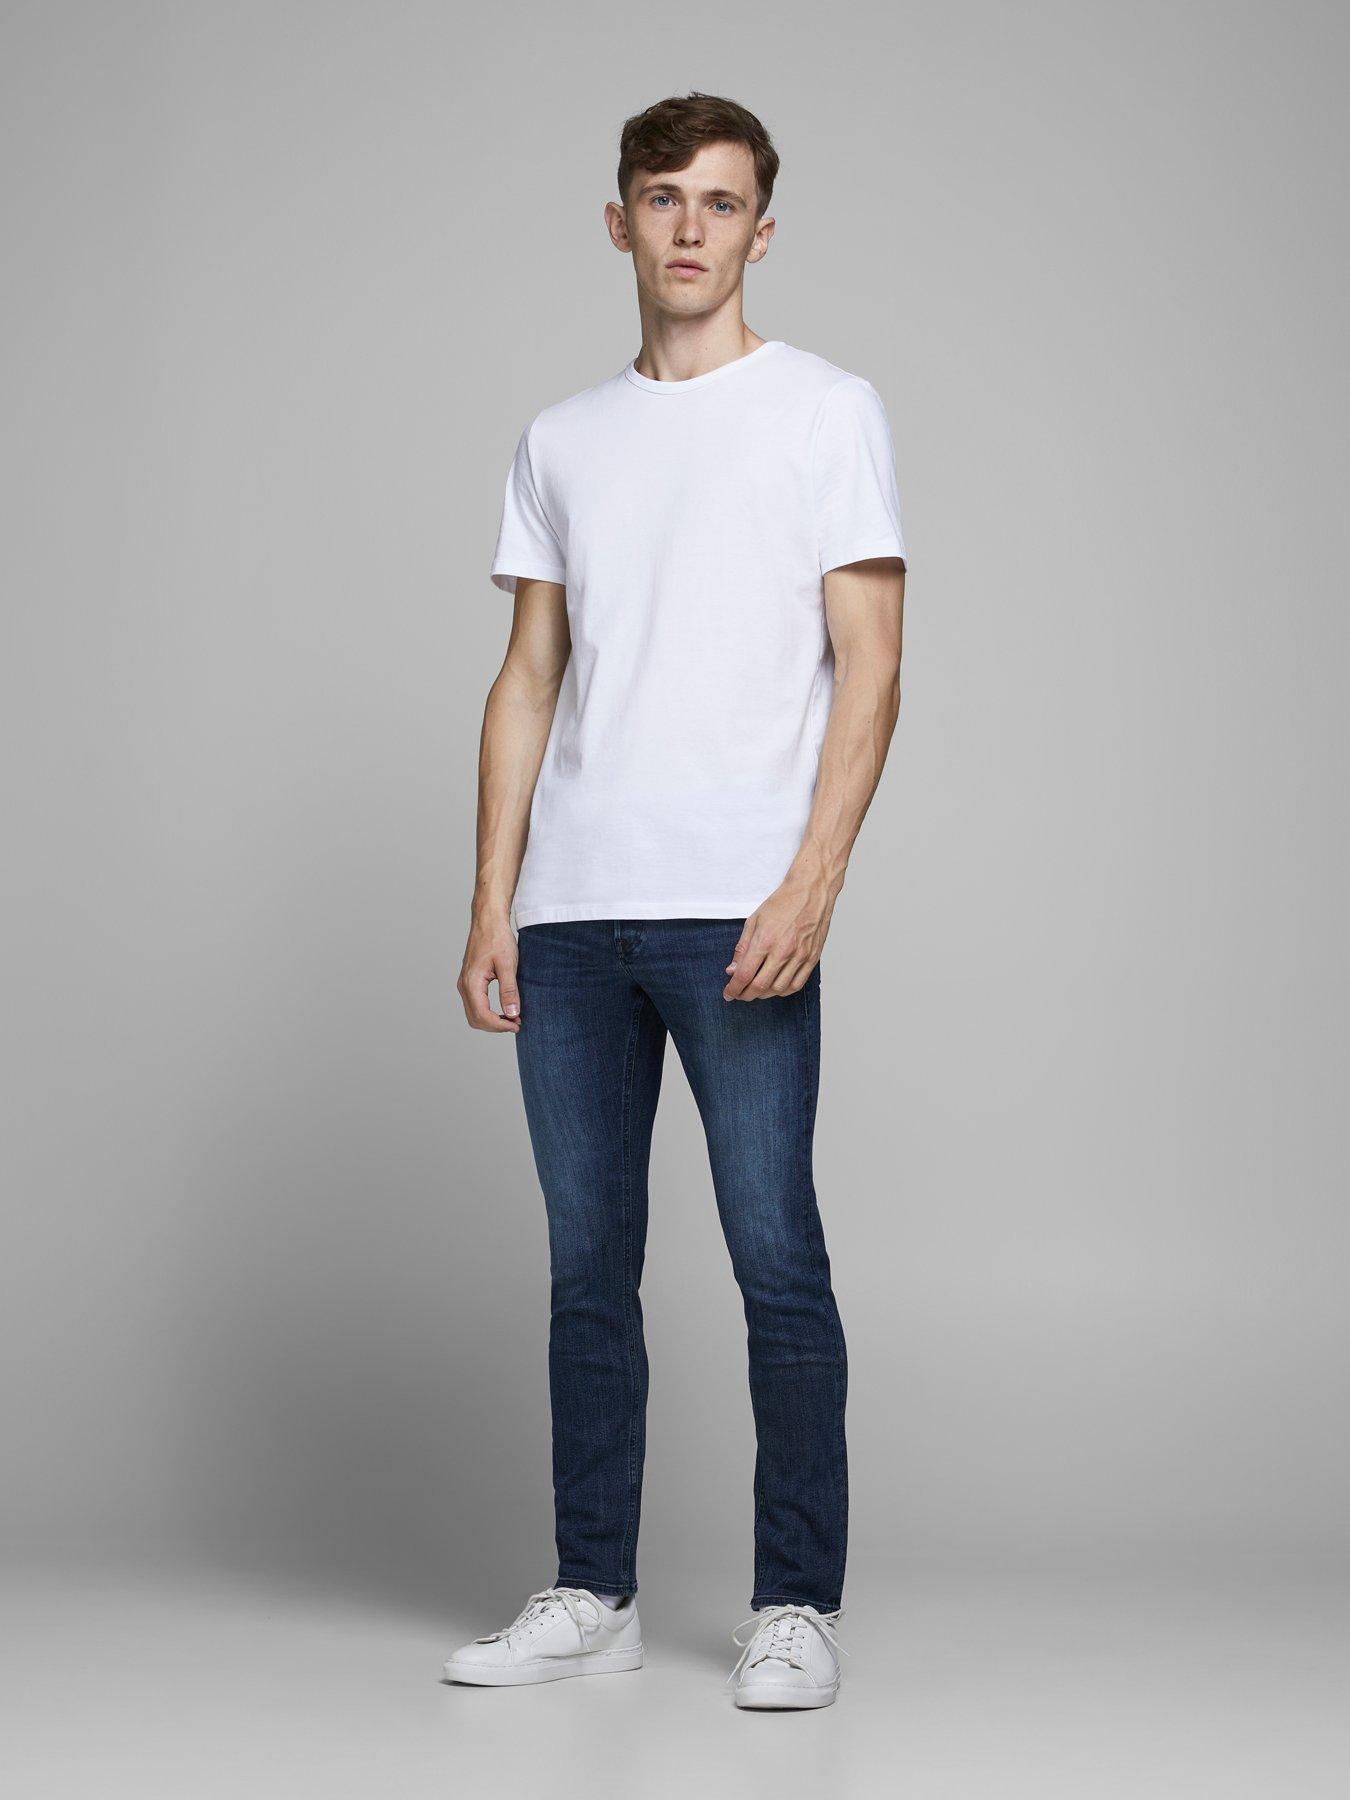 discount 56% Jack & Jones shorts jeans Gray S MEN FASHION Jeans Strech 